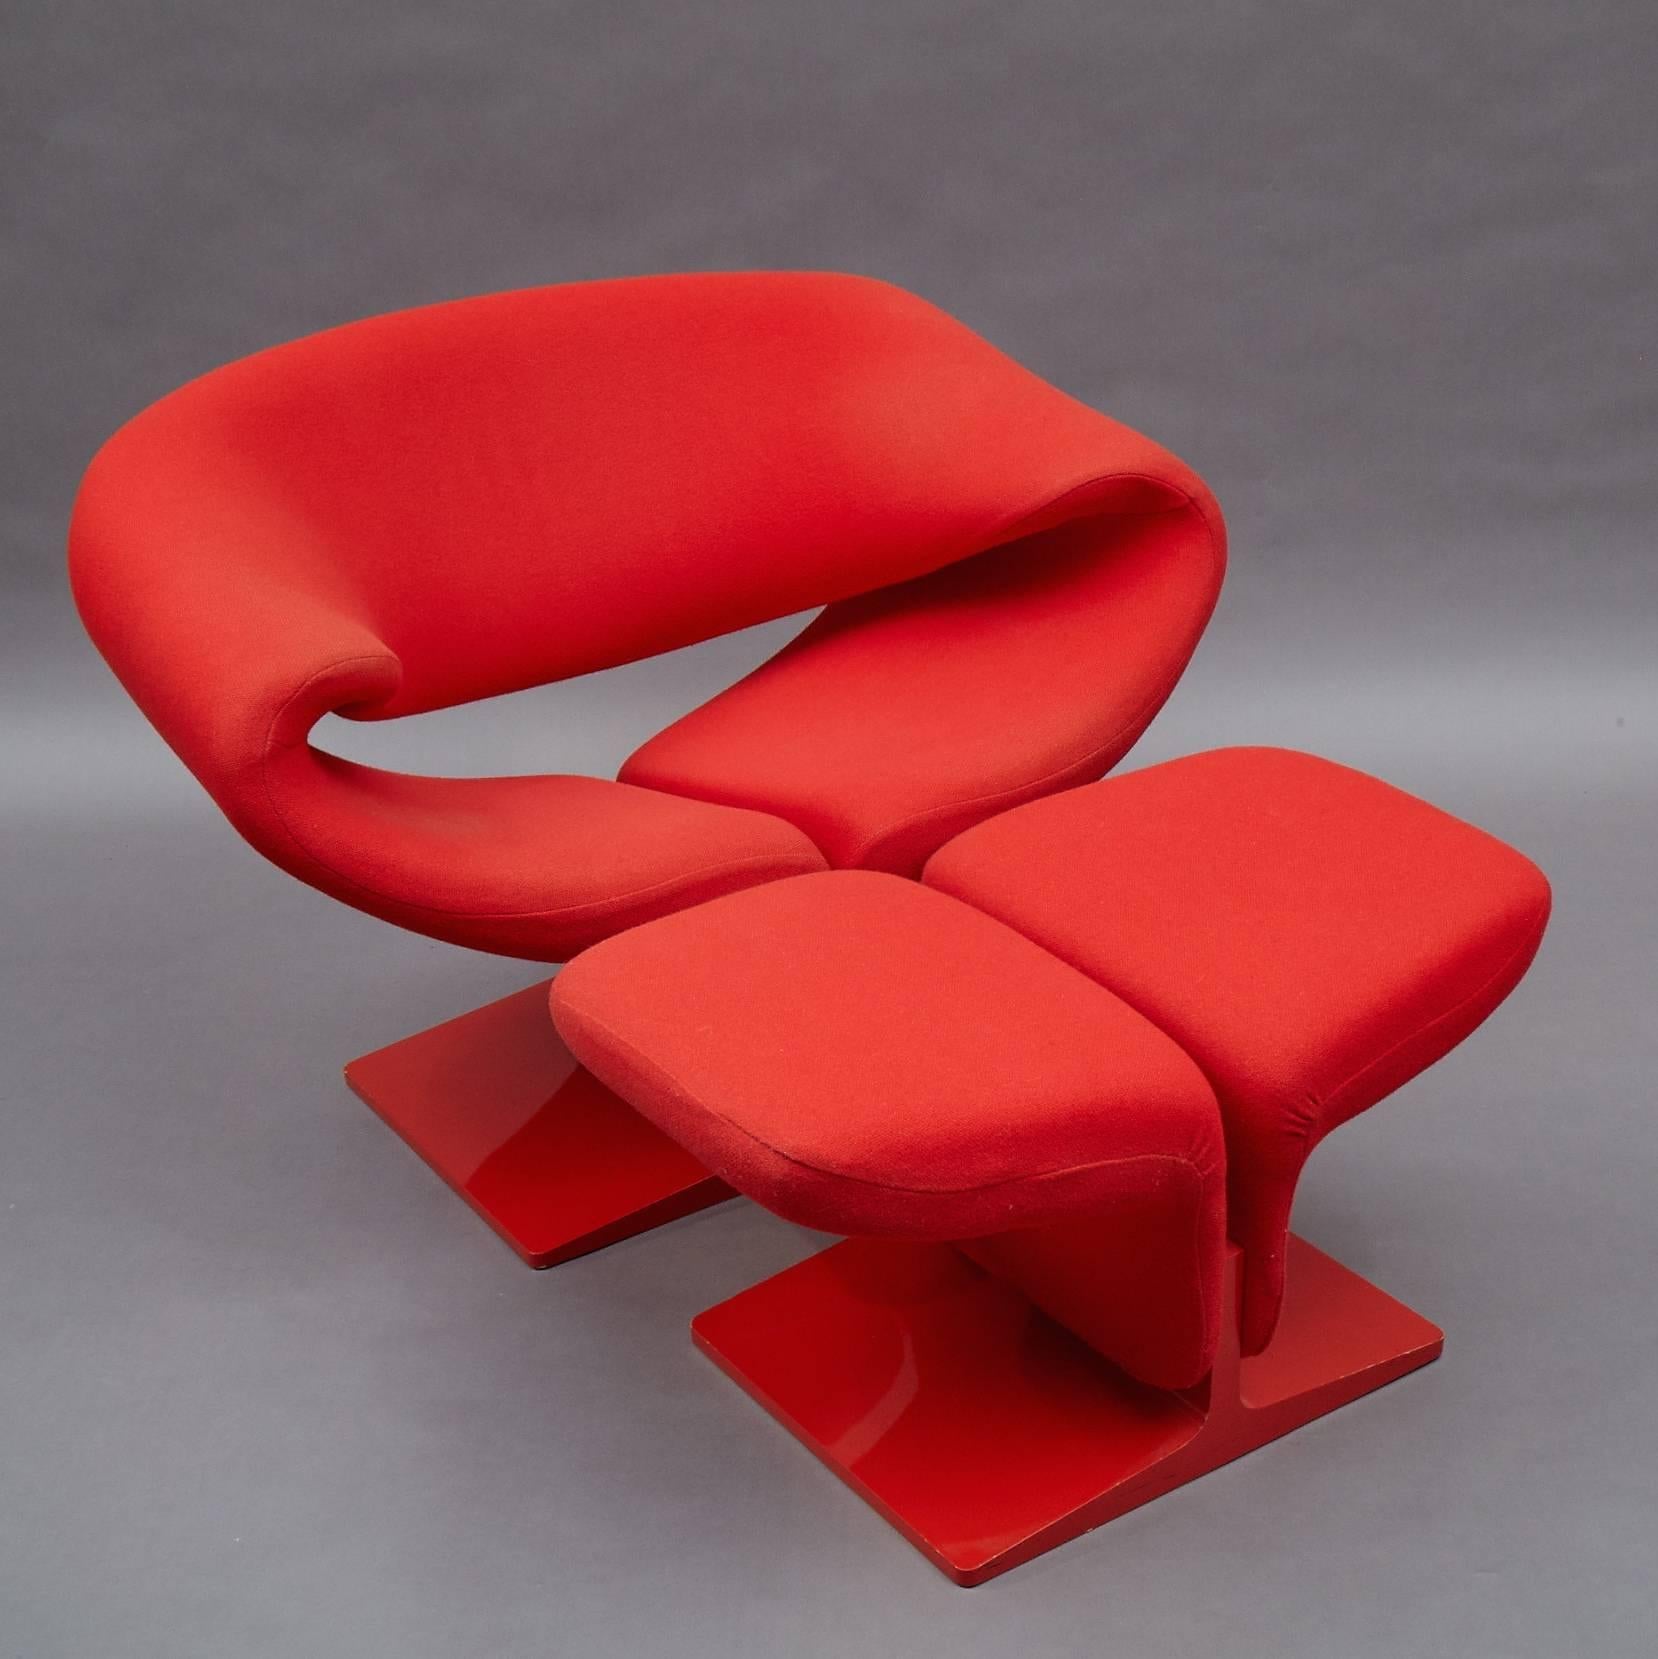 Cette chaise en ruban iconique et innovante et son ottoman assorti, conçus par Pierre Paulin pour Artifort, sont une forme organique étonnante en acier tubulaire profilé, conçue de manière ergonomique pour le confort. Ils sont monochromes, rouge